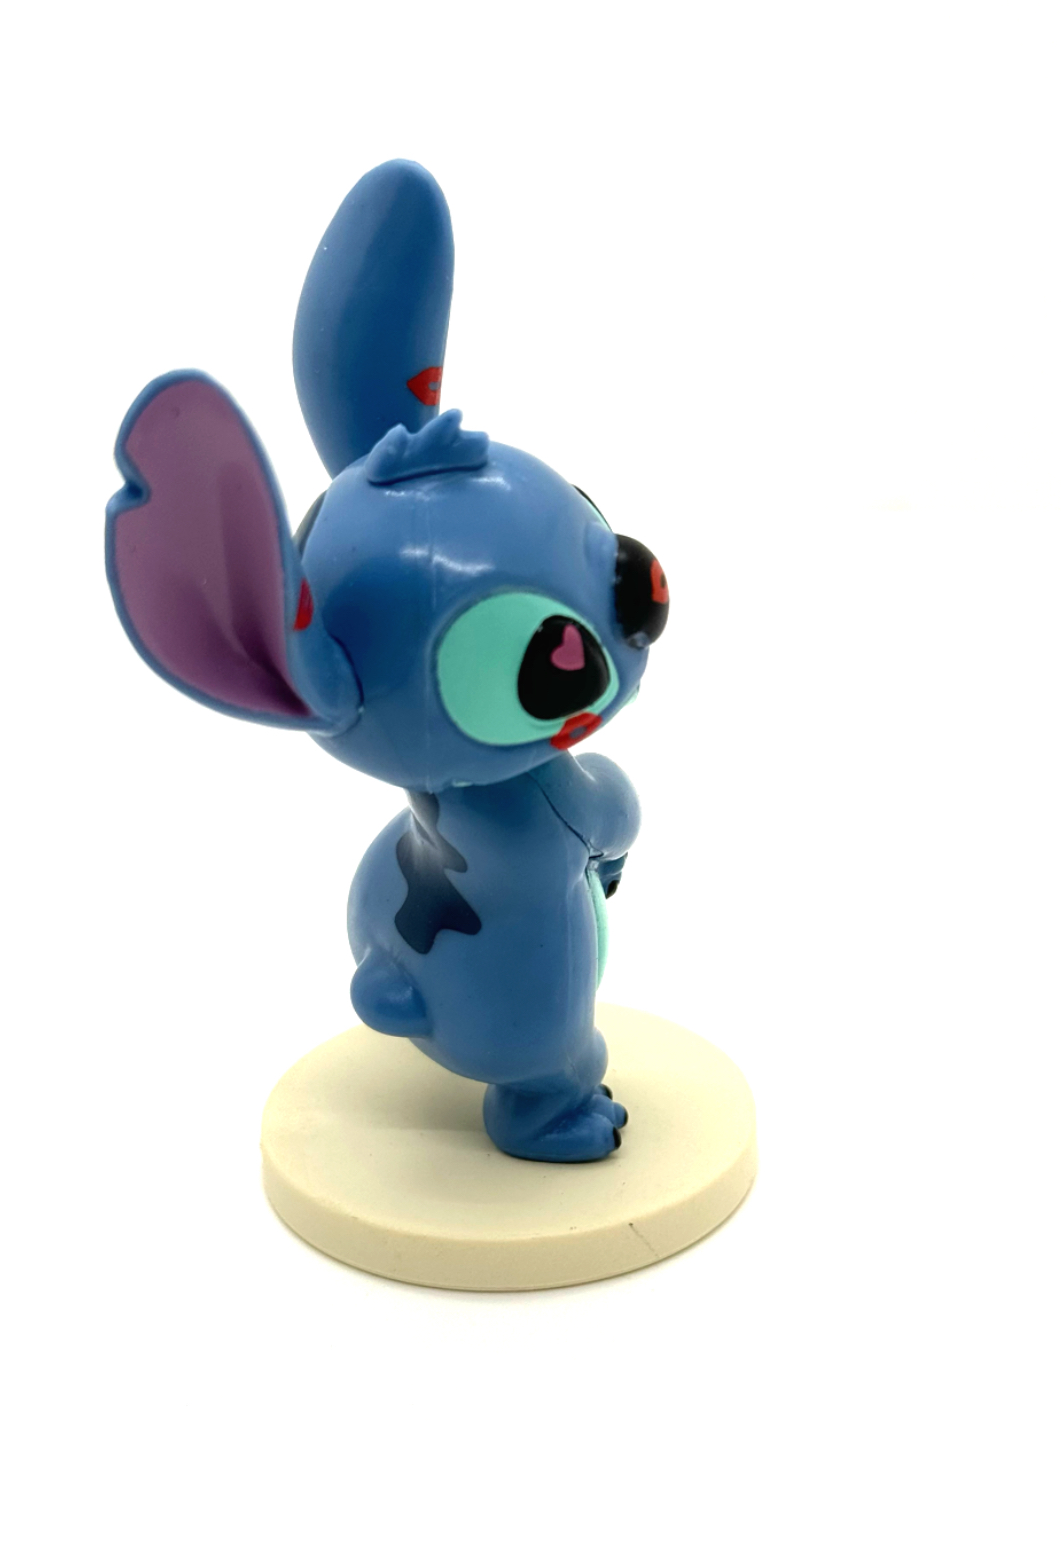 Deko Figur Stitch Mit Lippenstift “Lilo & Stitch” Sammlerfigur Disney 